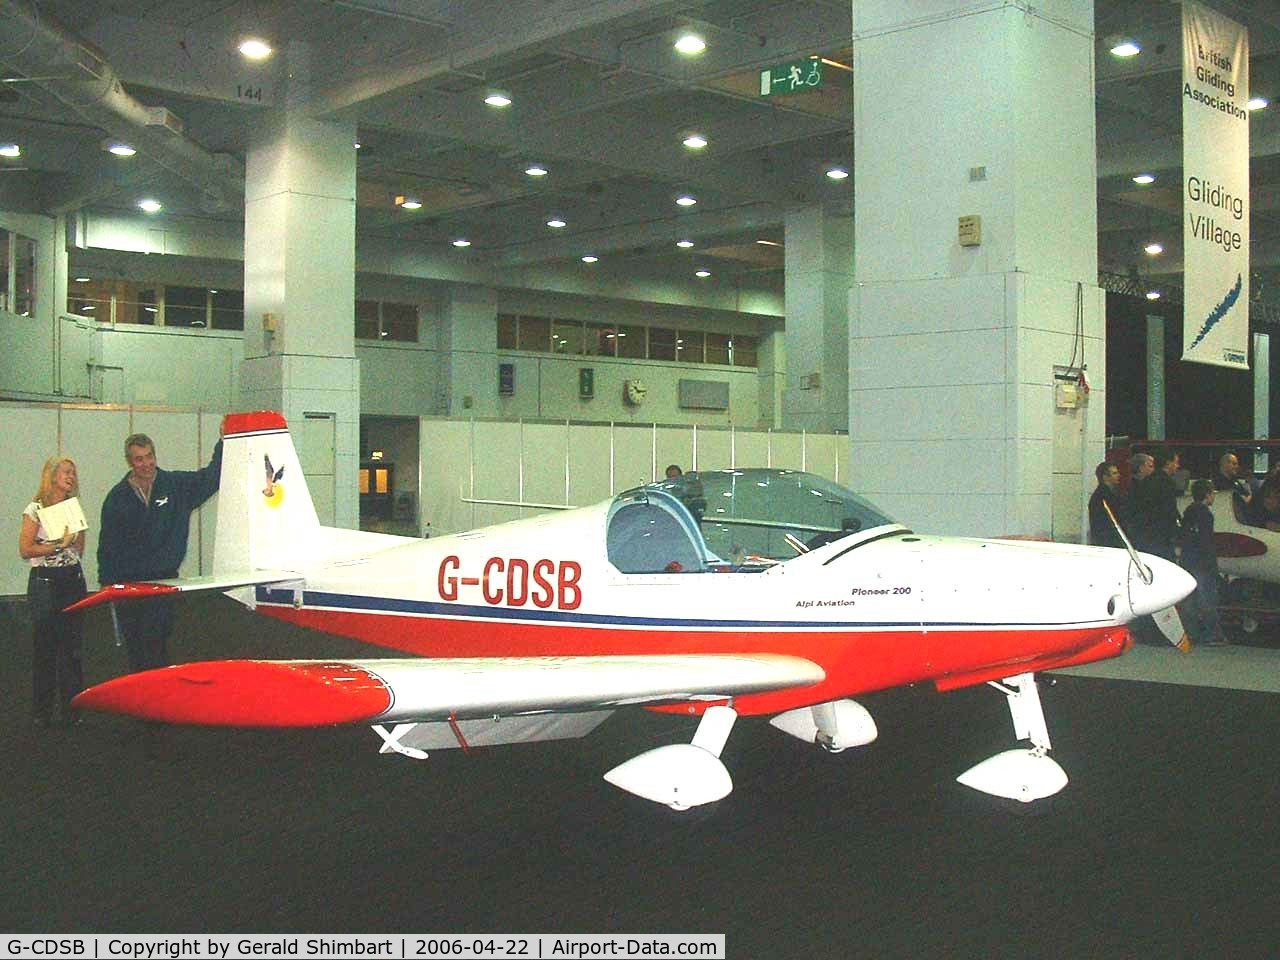 G-CDSB, 2005 Alpi Aviation Pioneer 200 C/N PFA 334-14443, Alpi Aviation Pioneer 200